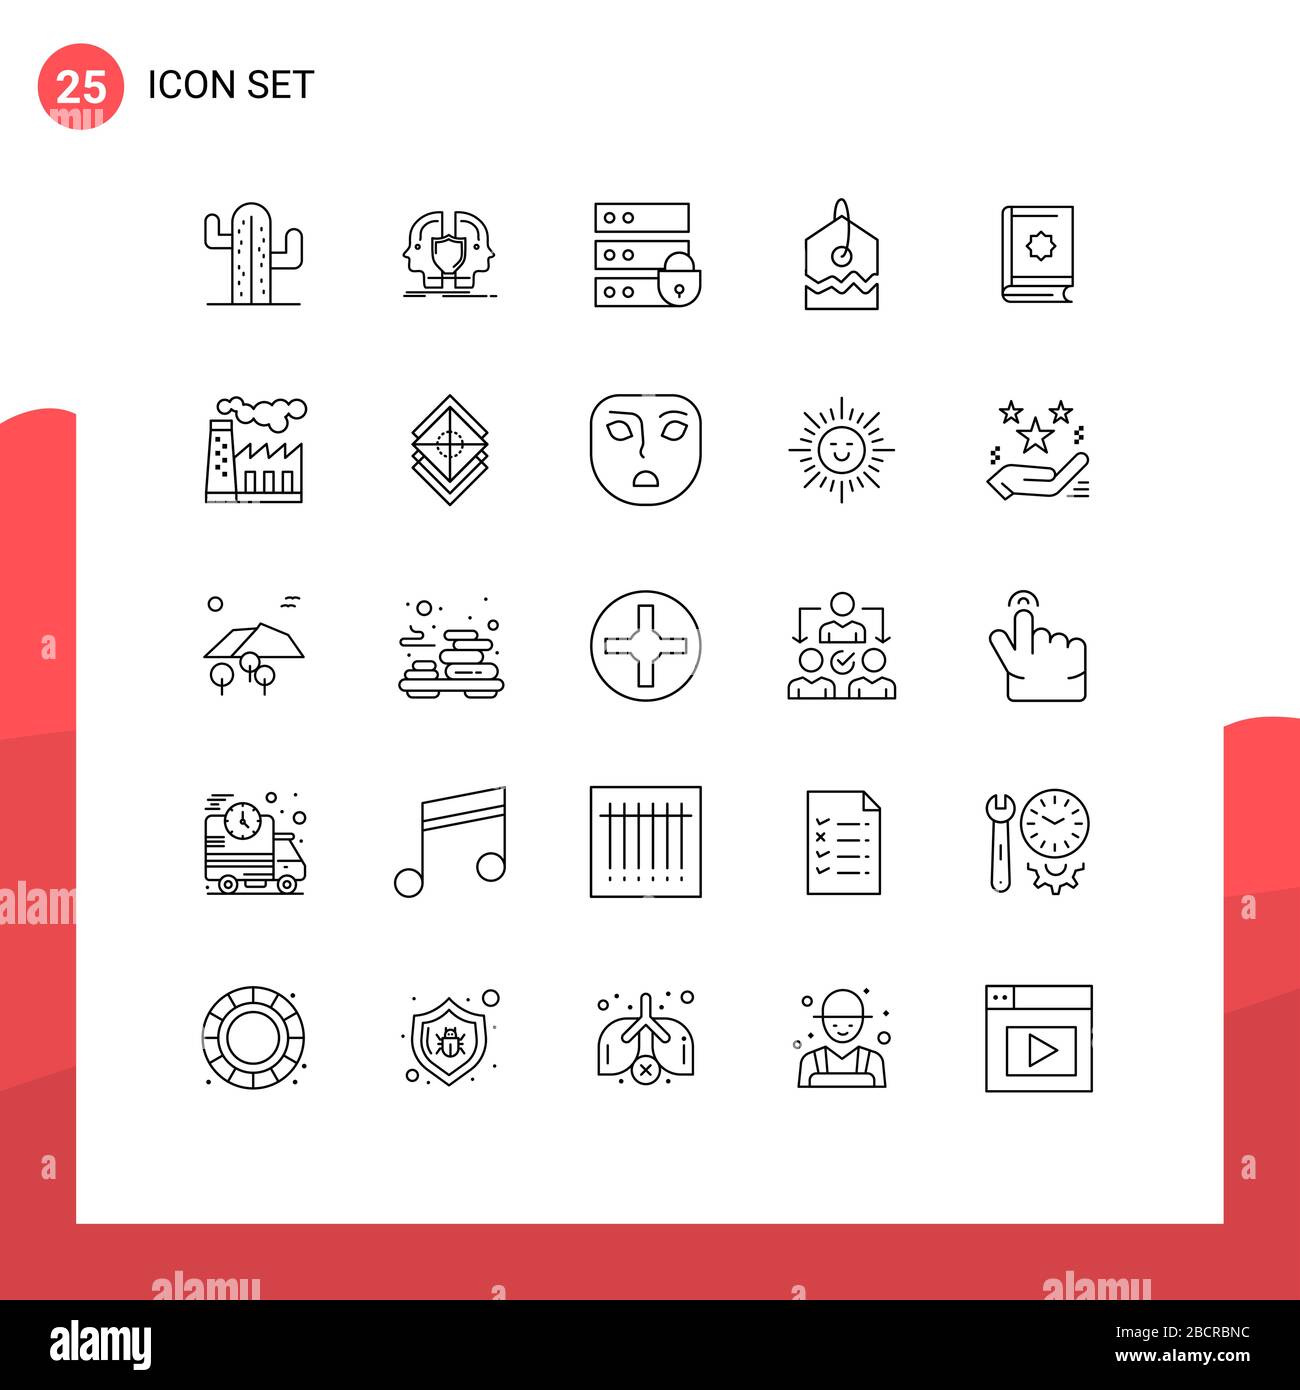 25 User Interface Line Pack mit modernen Zeichen und Symbolen für Buch-, Tag-, seild-, over-, Key Editable Vector Design-Elemente Stock Vektor